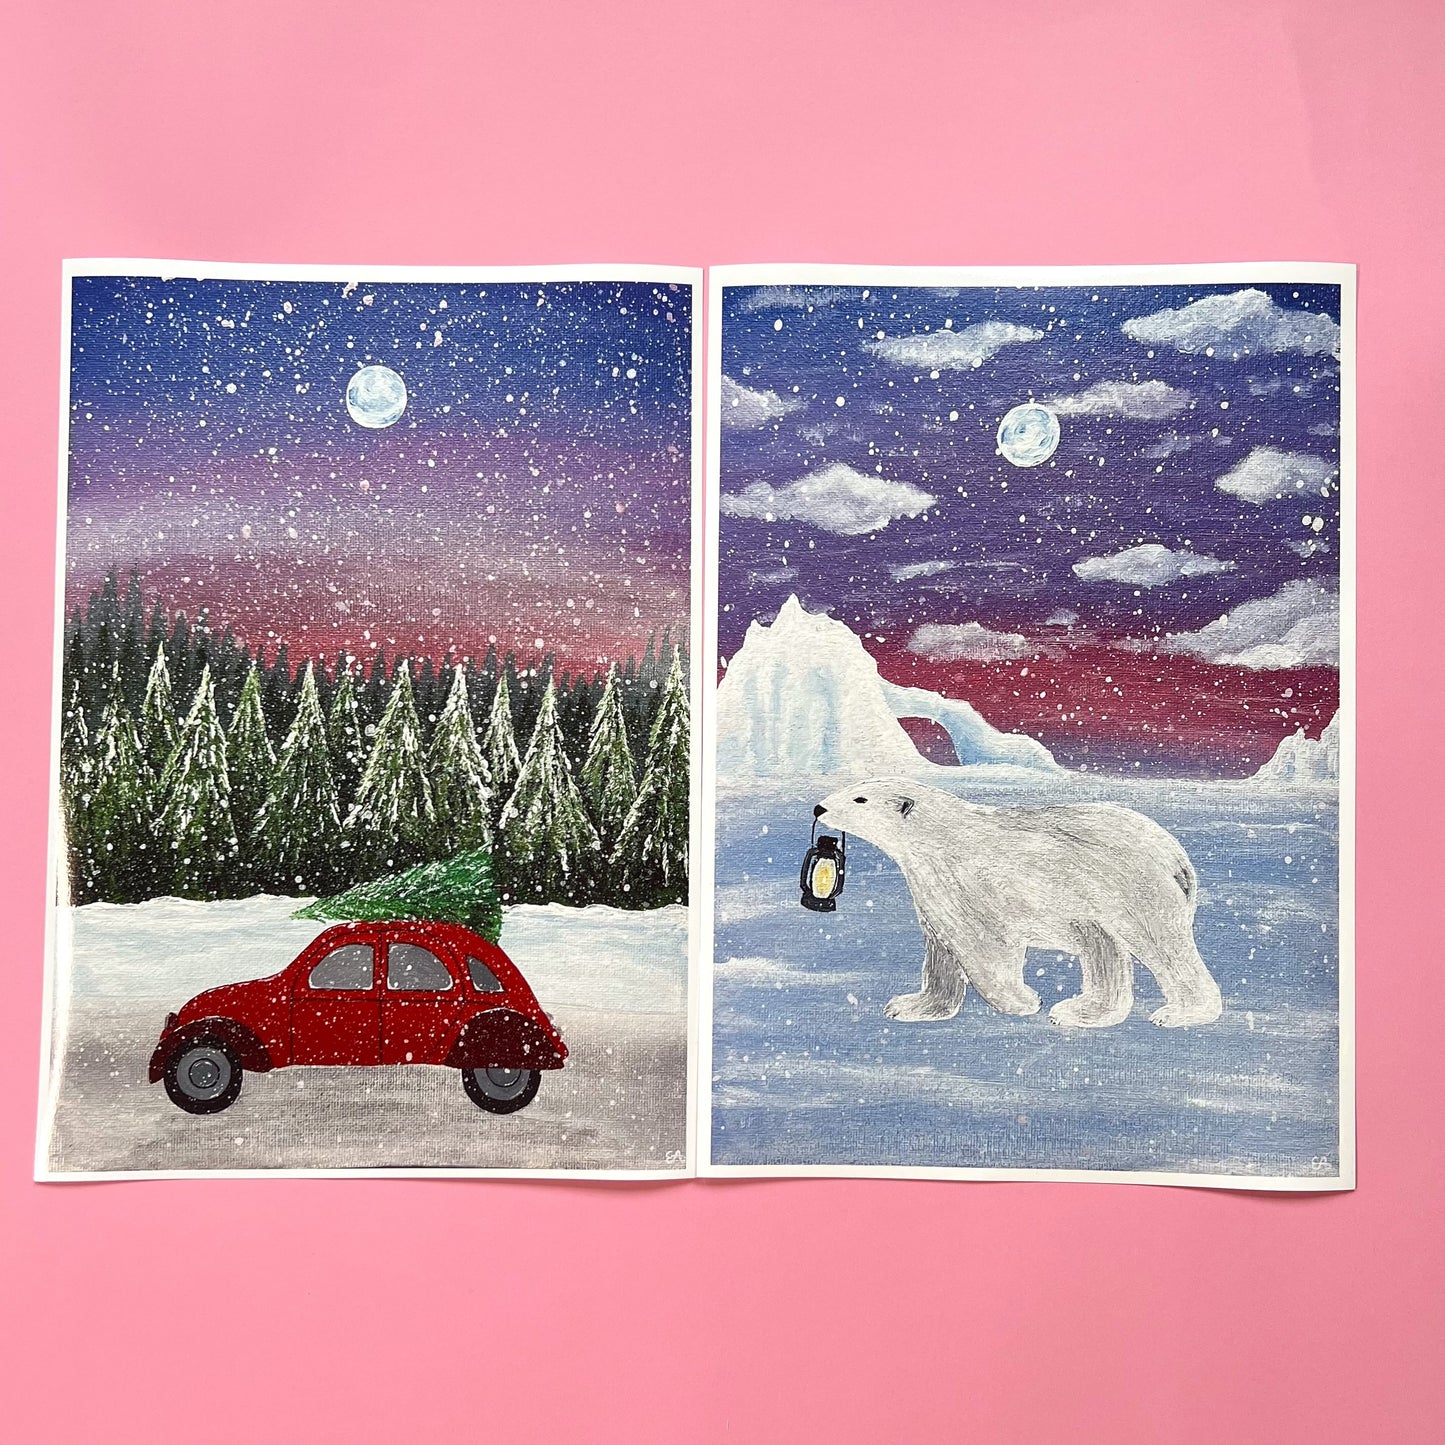 Red Car Christmas Art Print, Christmas Wall Art